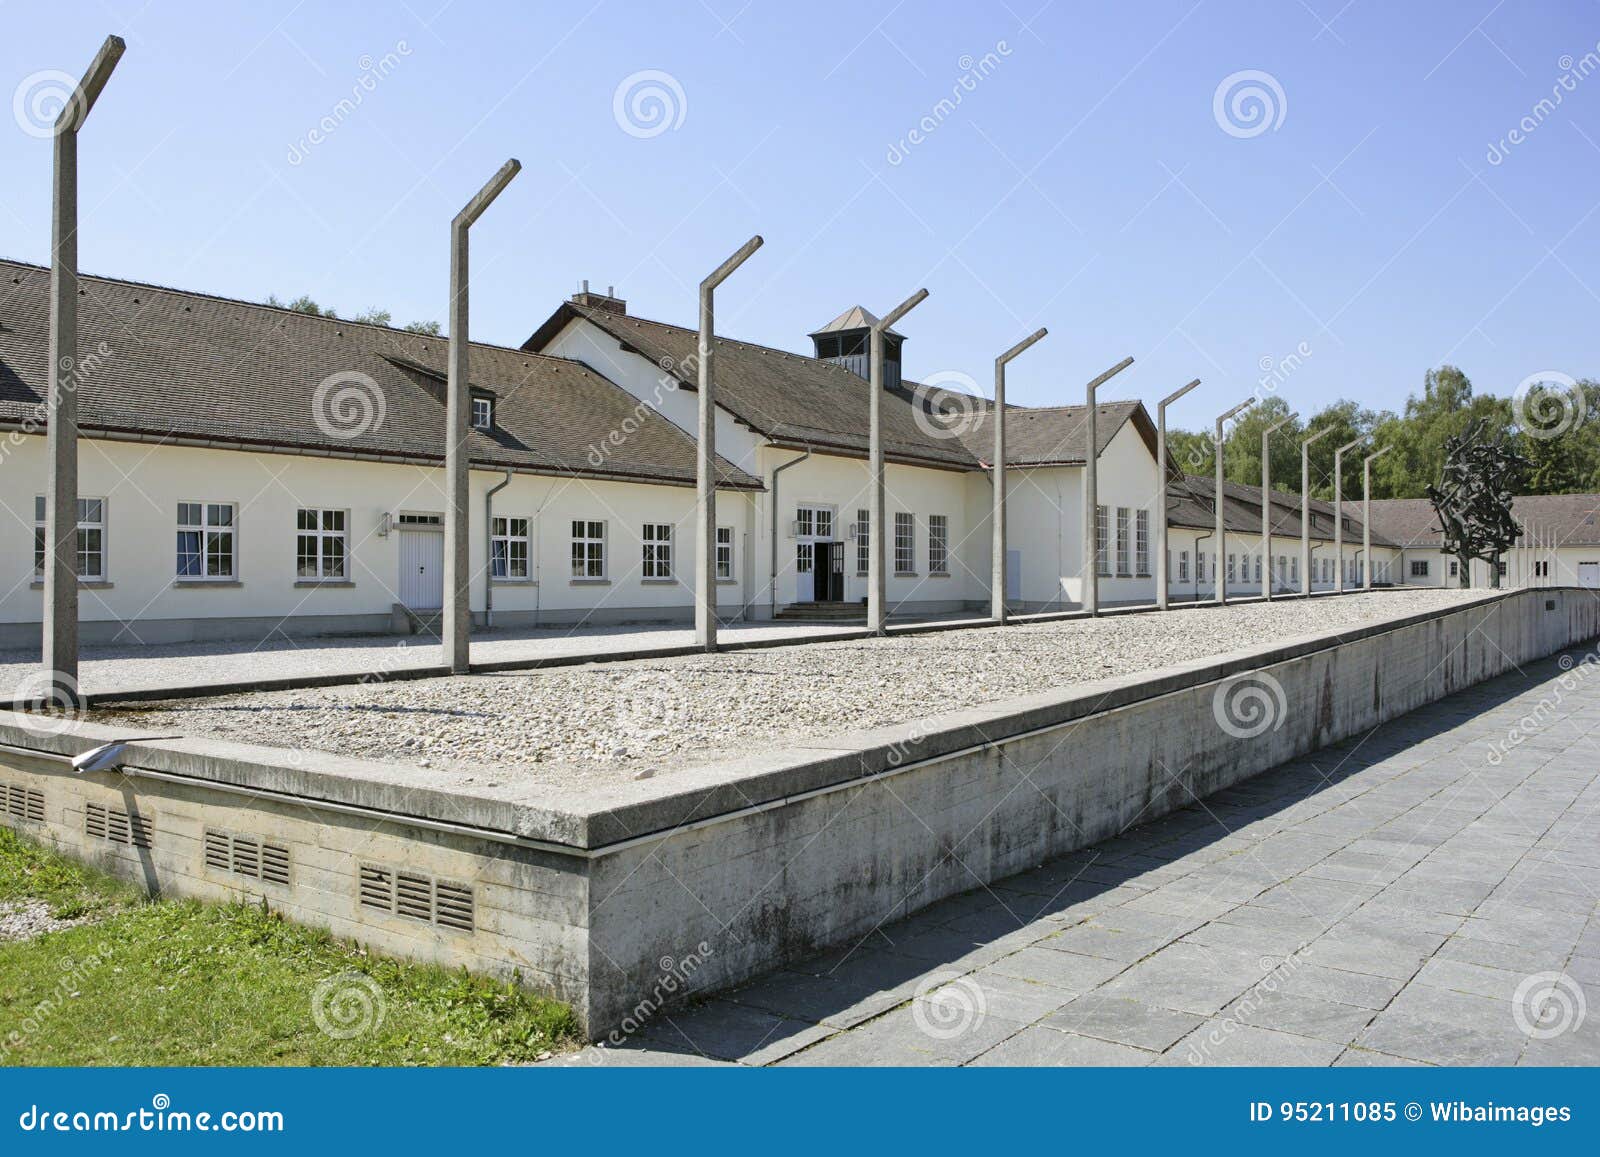 Nazi sites in munich germany